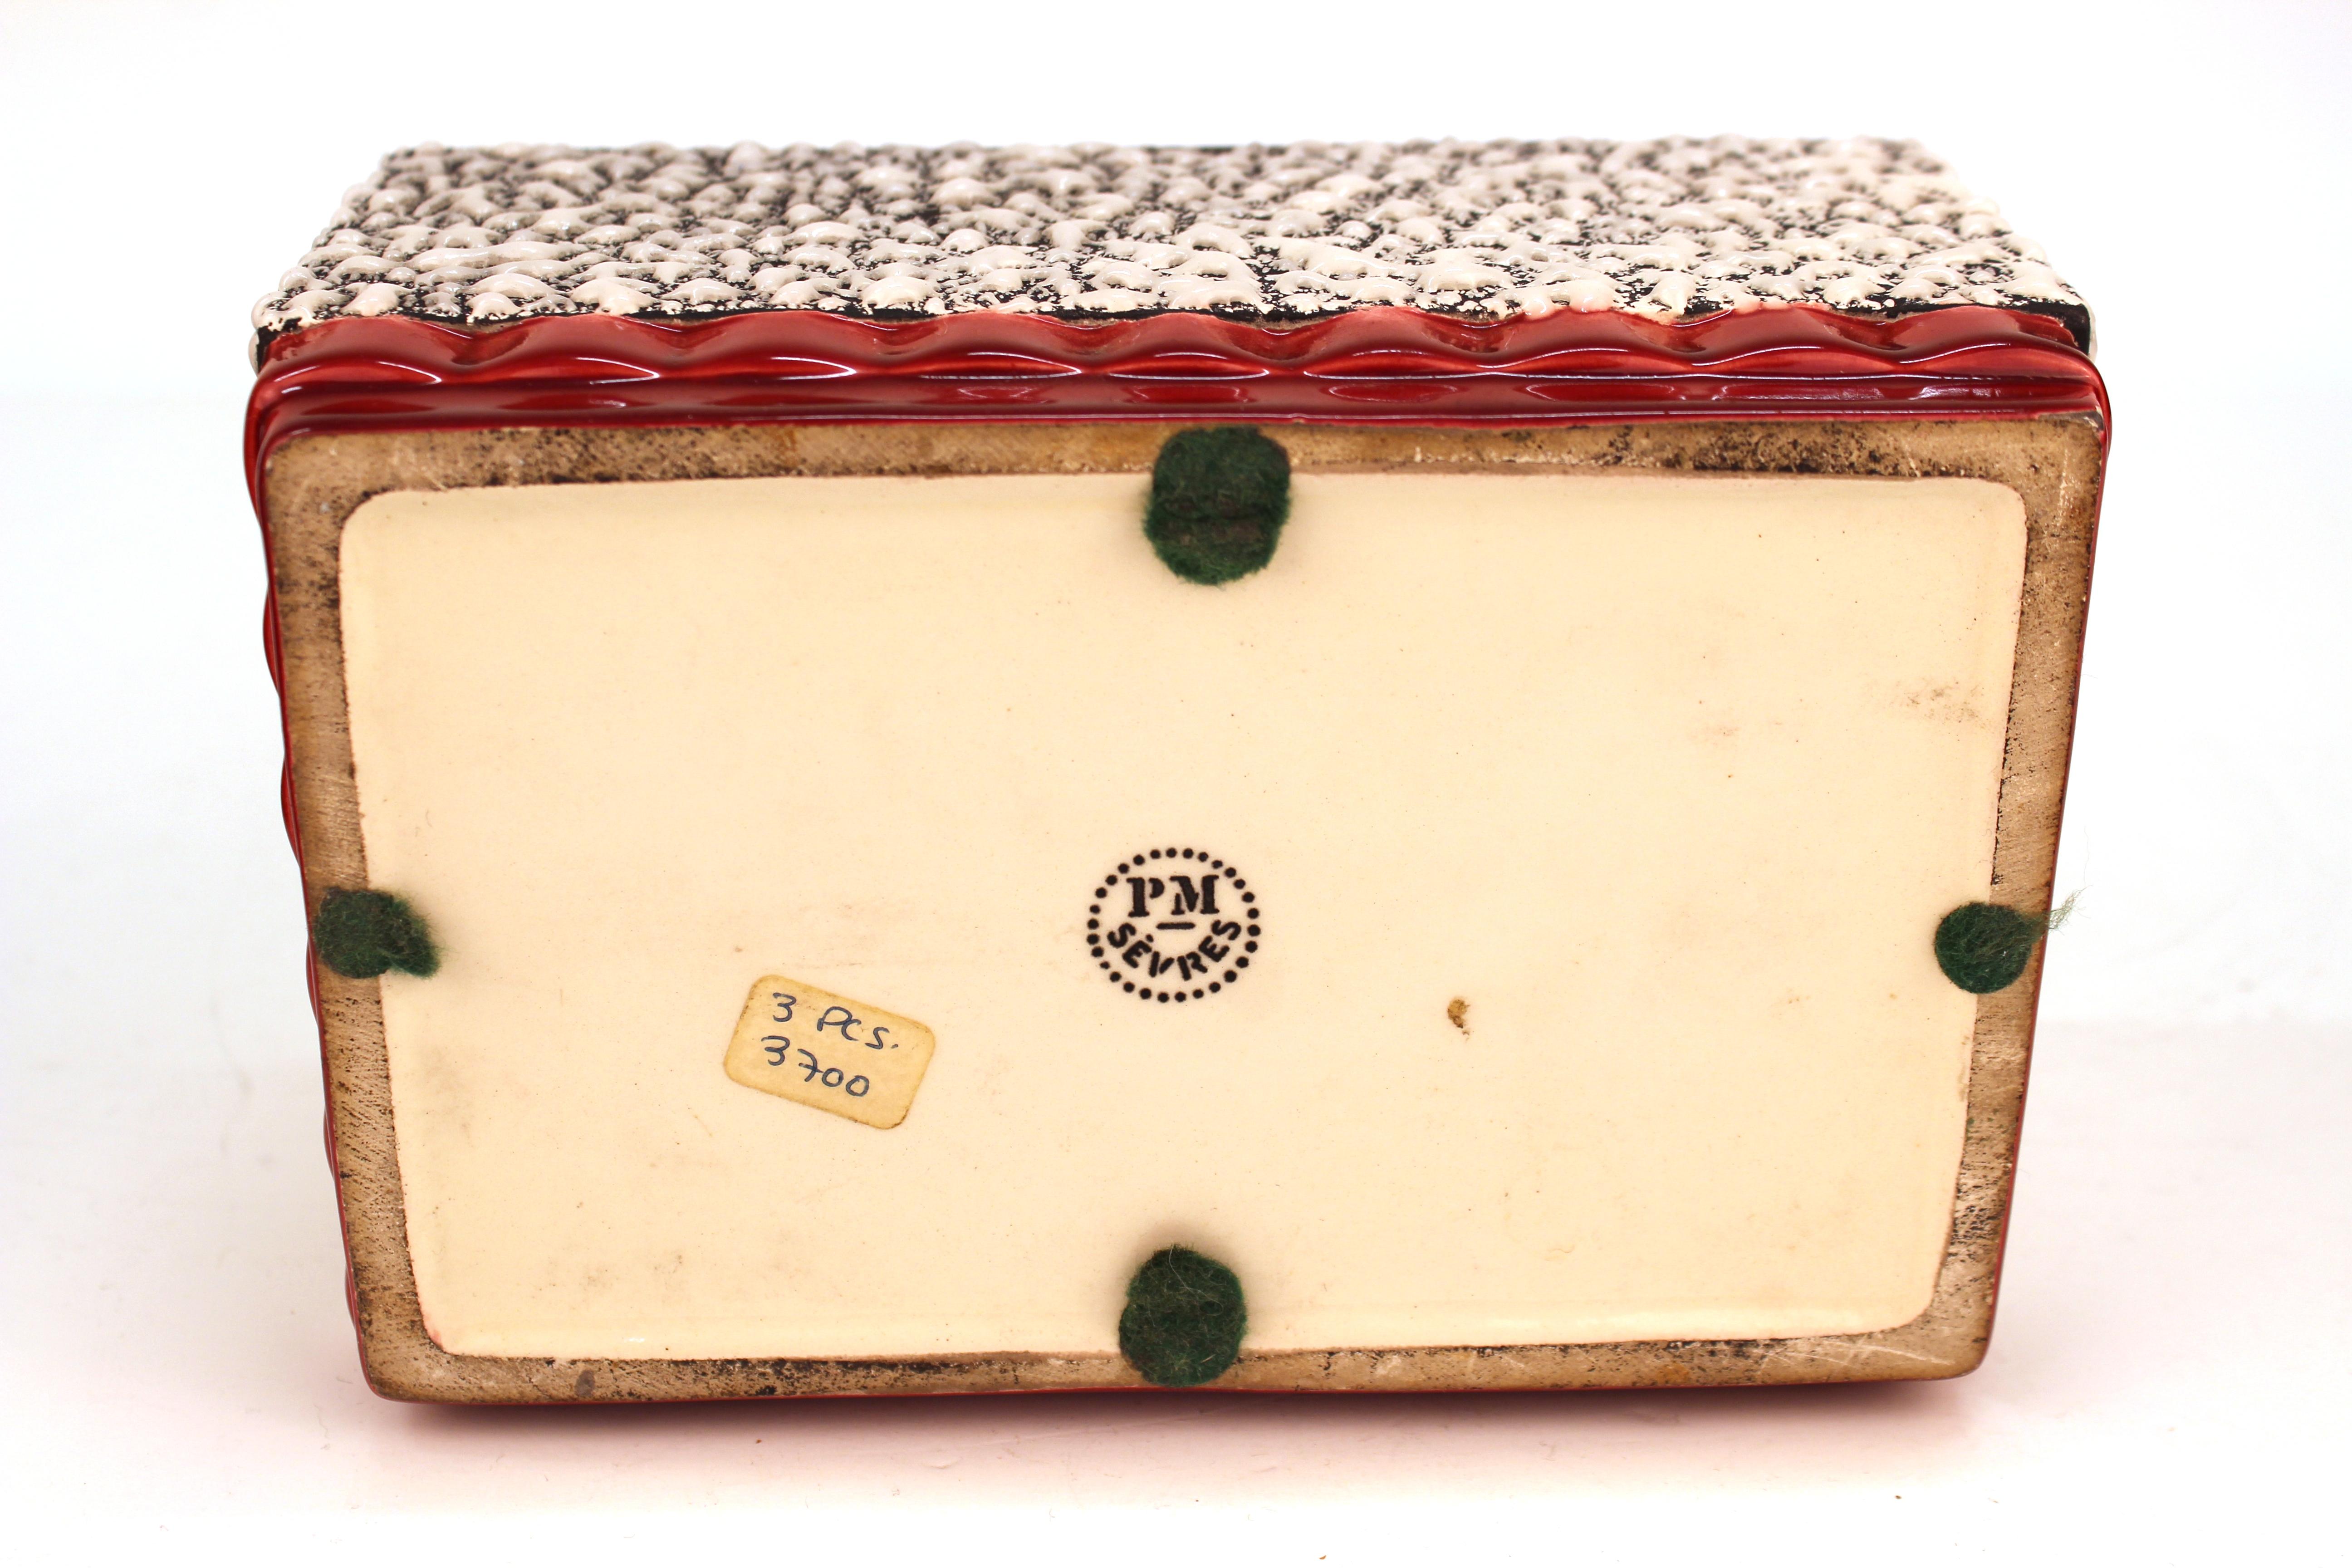 Paul Milet Art Deco Sèvres Ceramic Box with Lid 3